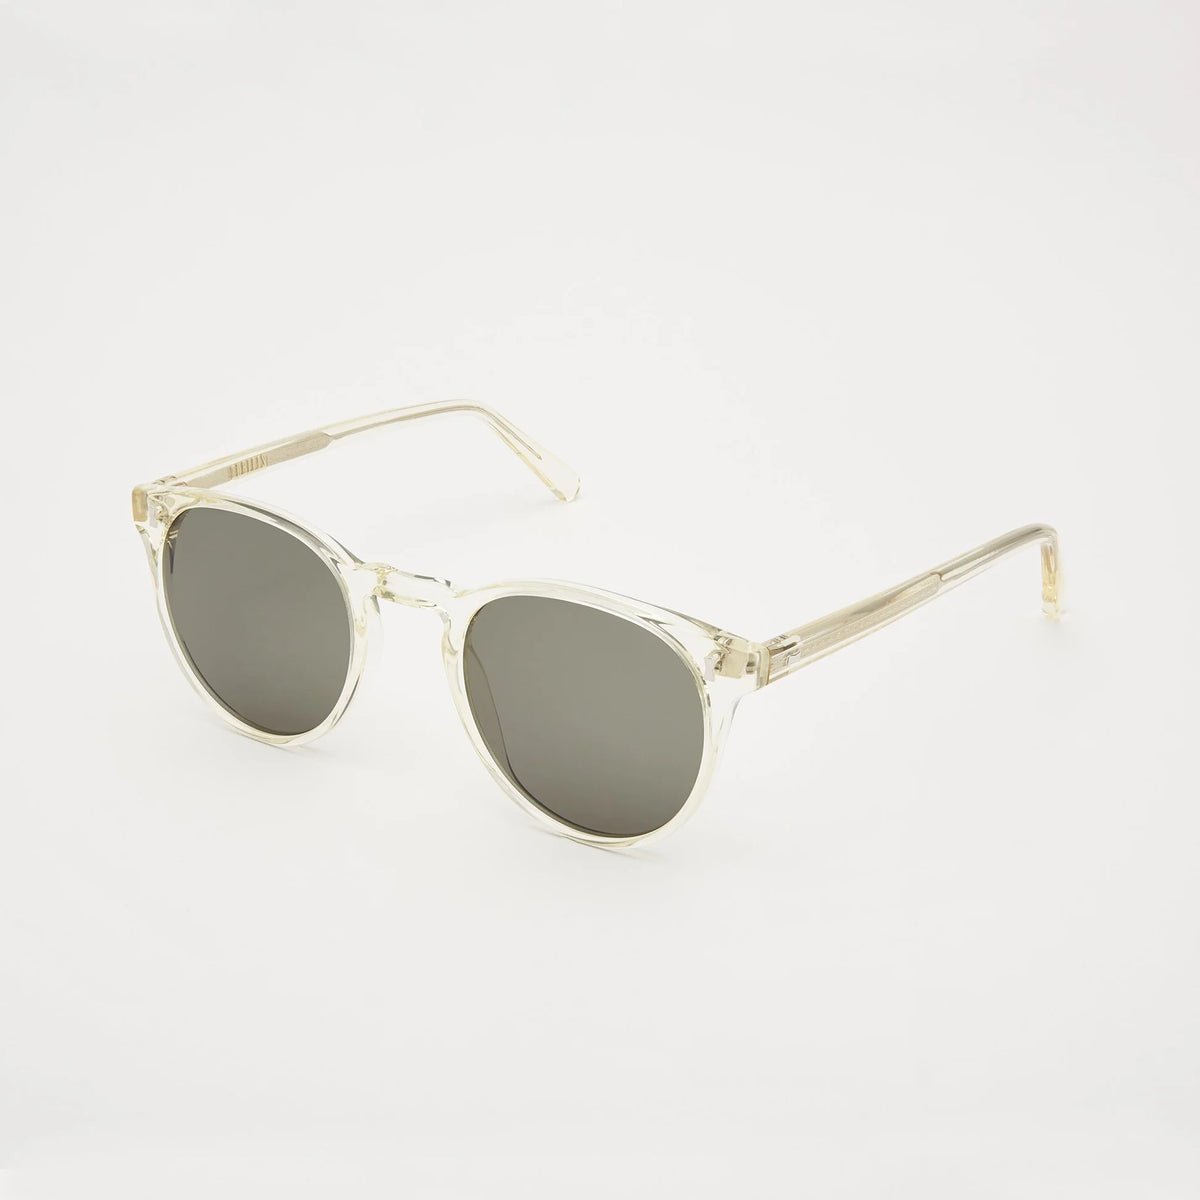 Quartz Cubitts Herbrand Sunglasses